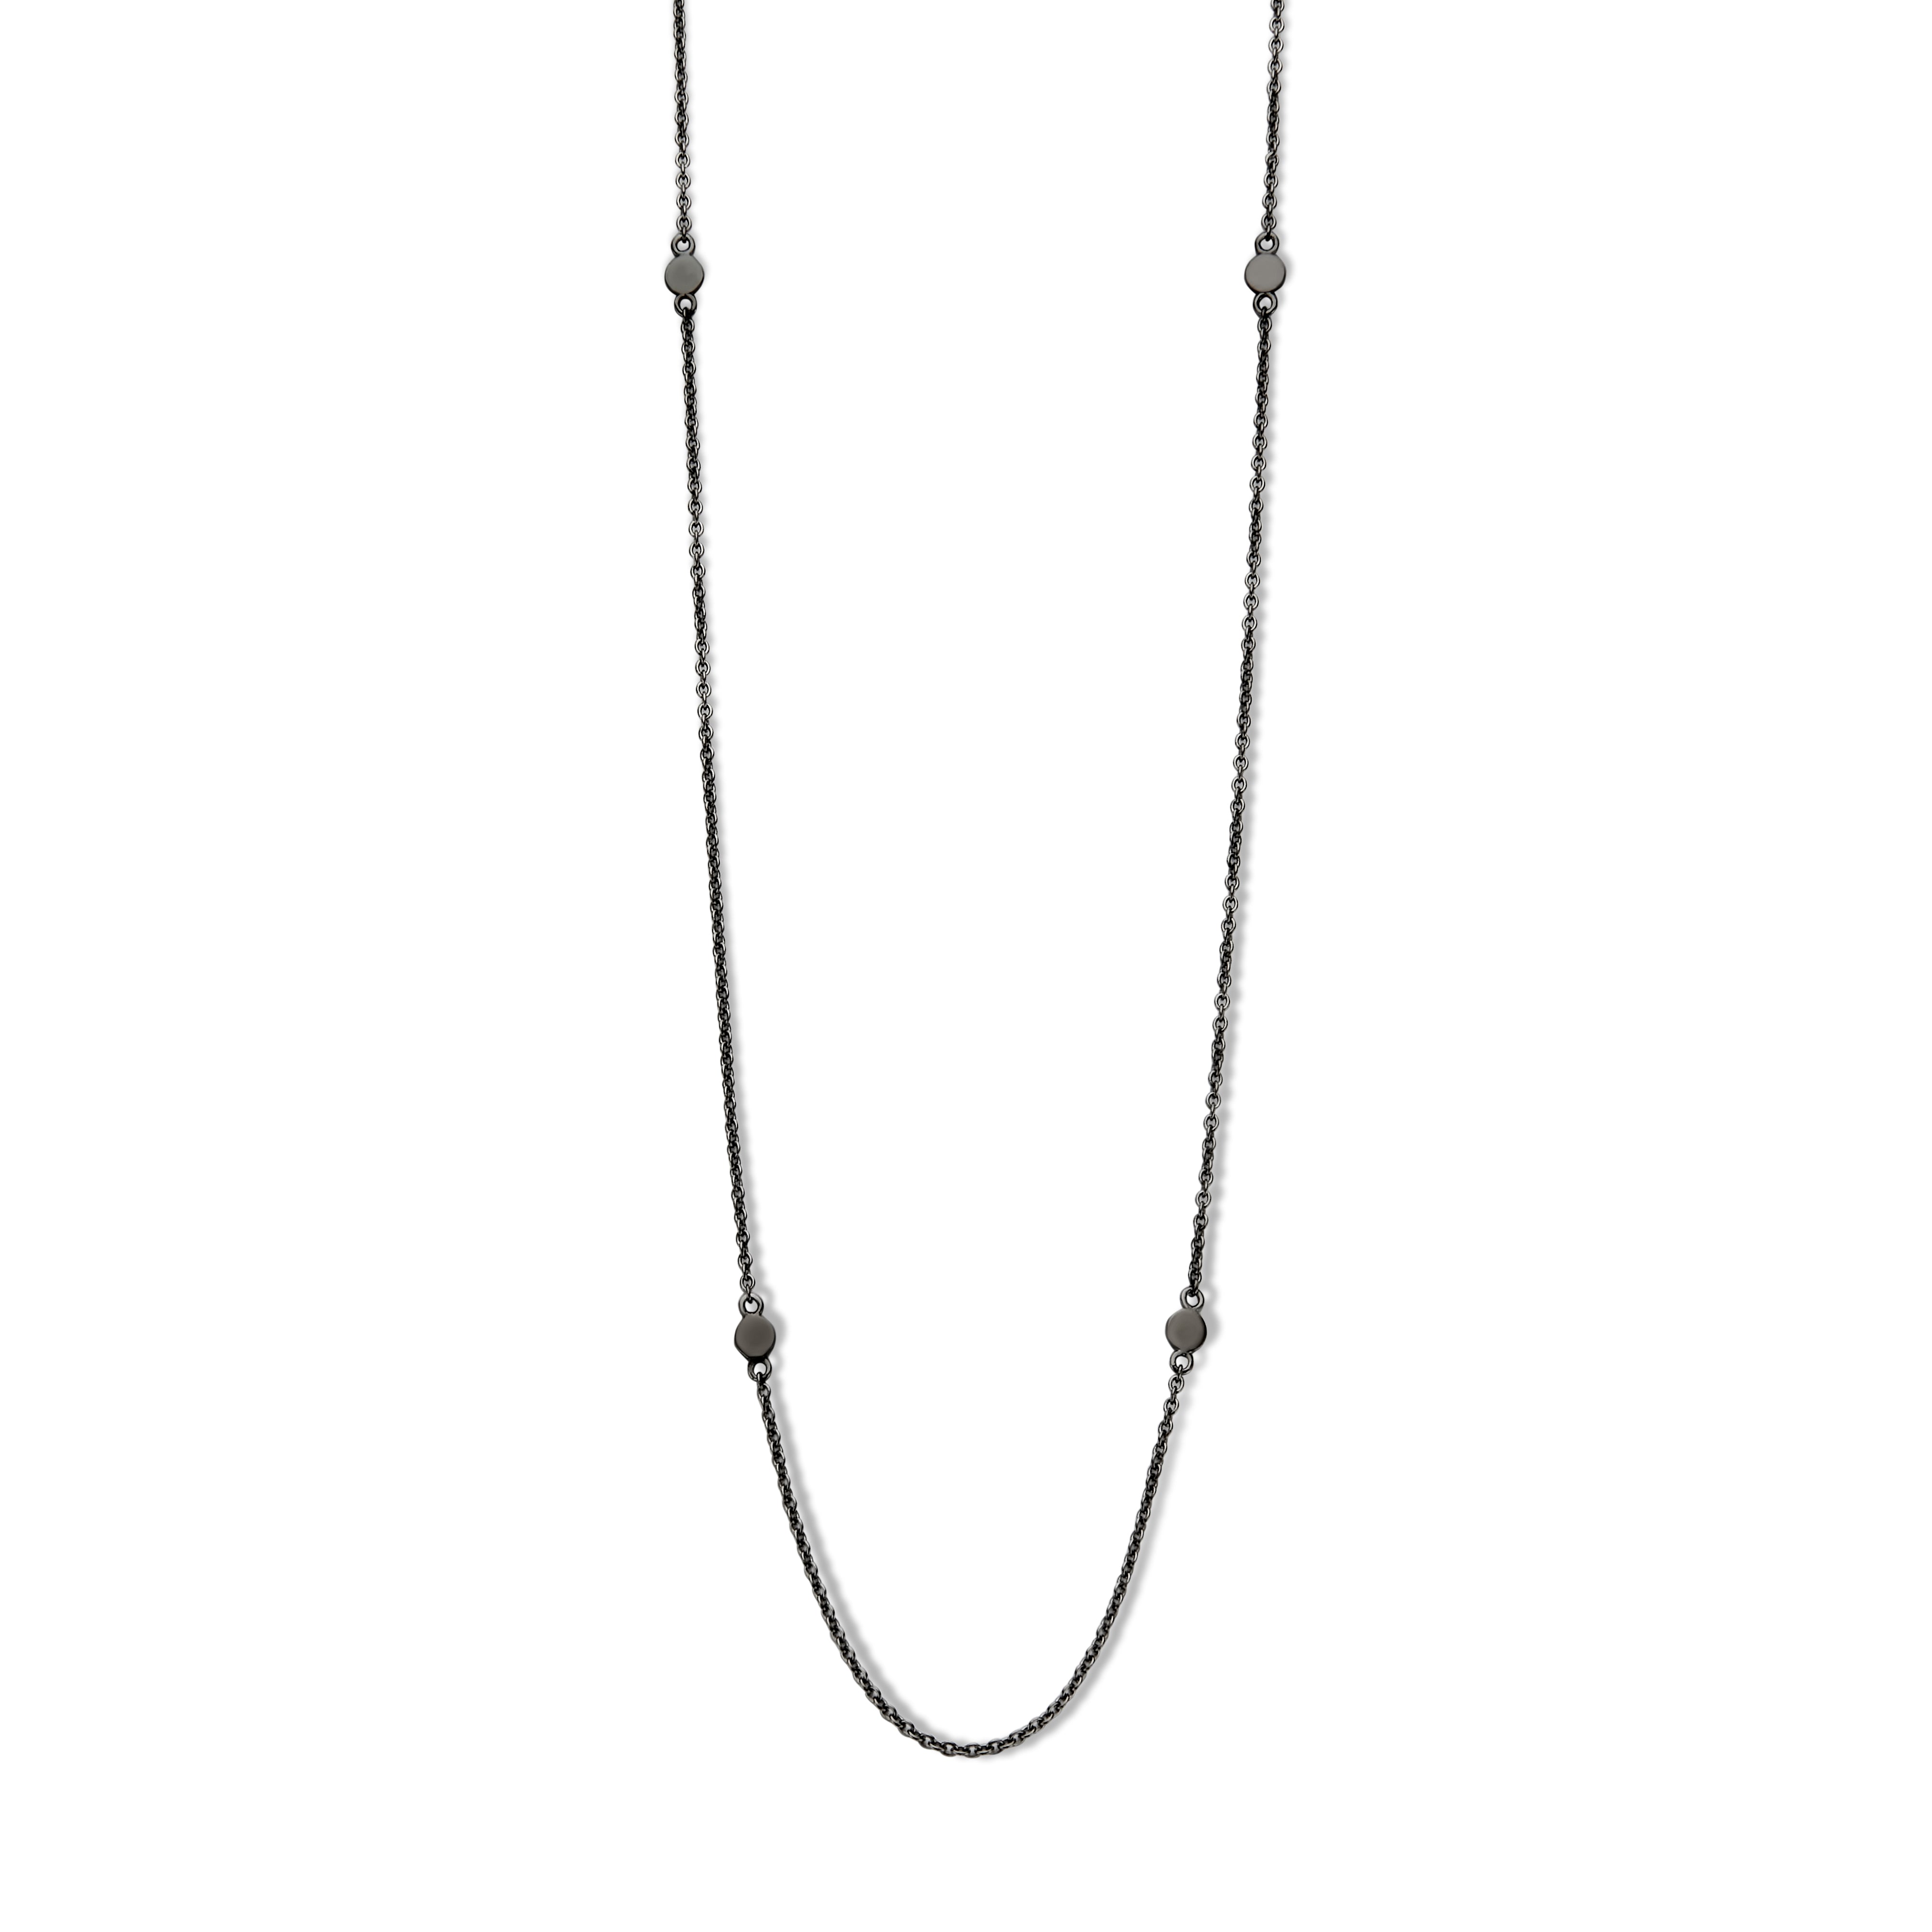 Obsession halskæde 60/70 cm - sølv sort ruthineret-1